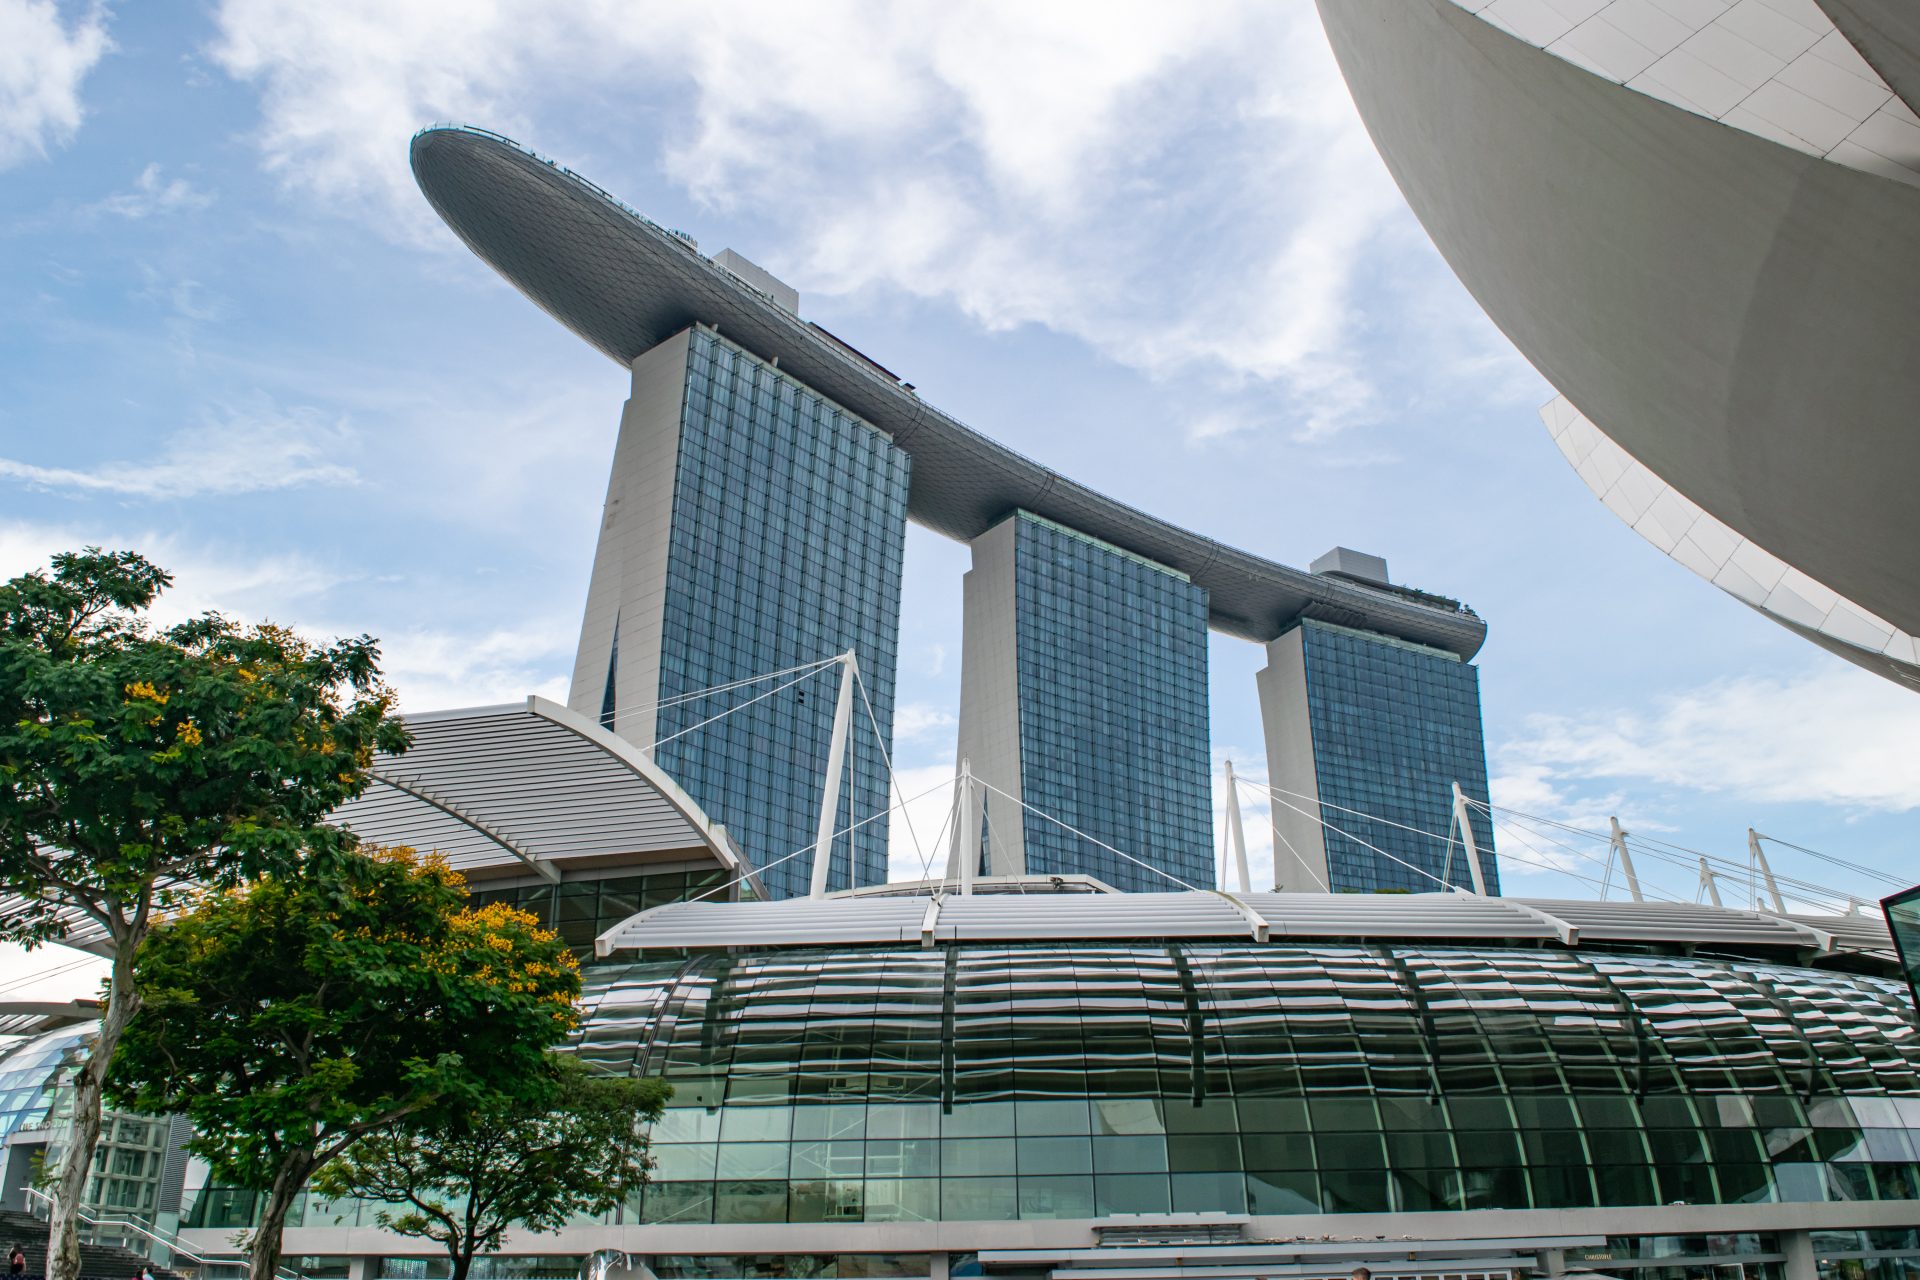 Marina Bay Sands sett fra promenaden nedenfor, med den ikoniske bygningen som strekker seg mot himmelen